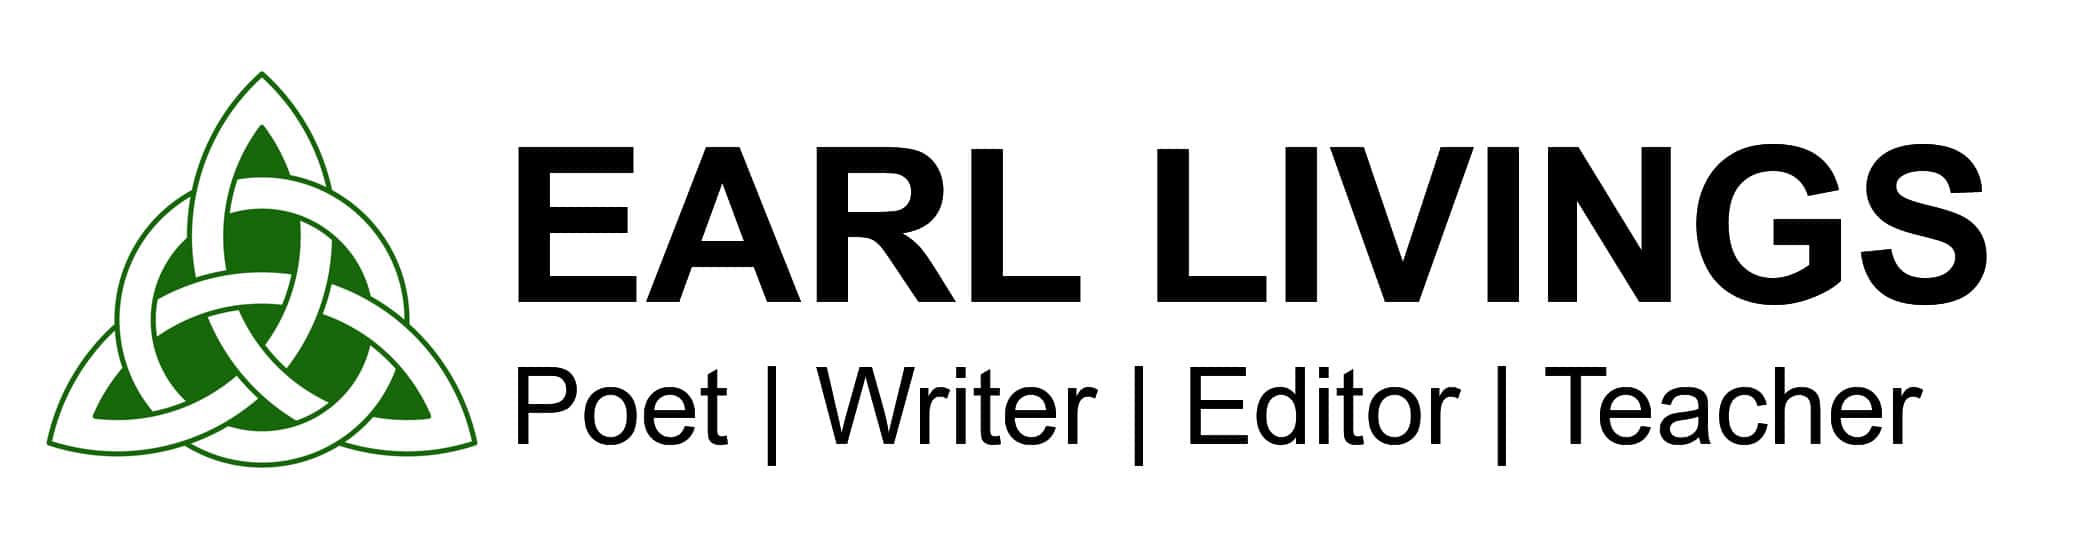 Earl Livings | Writer, Poet, Editor, Teacher